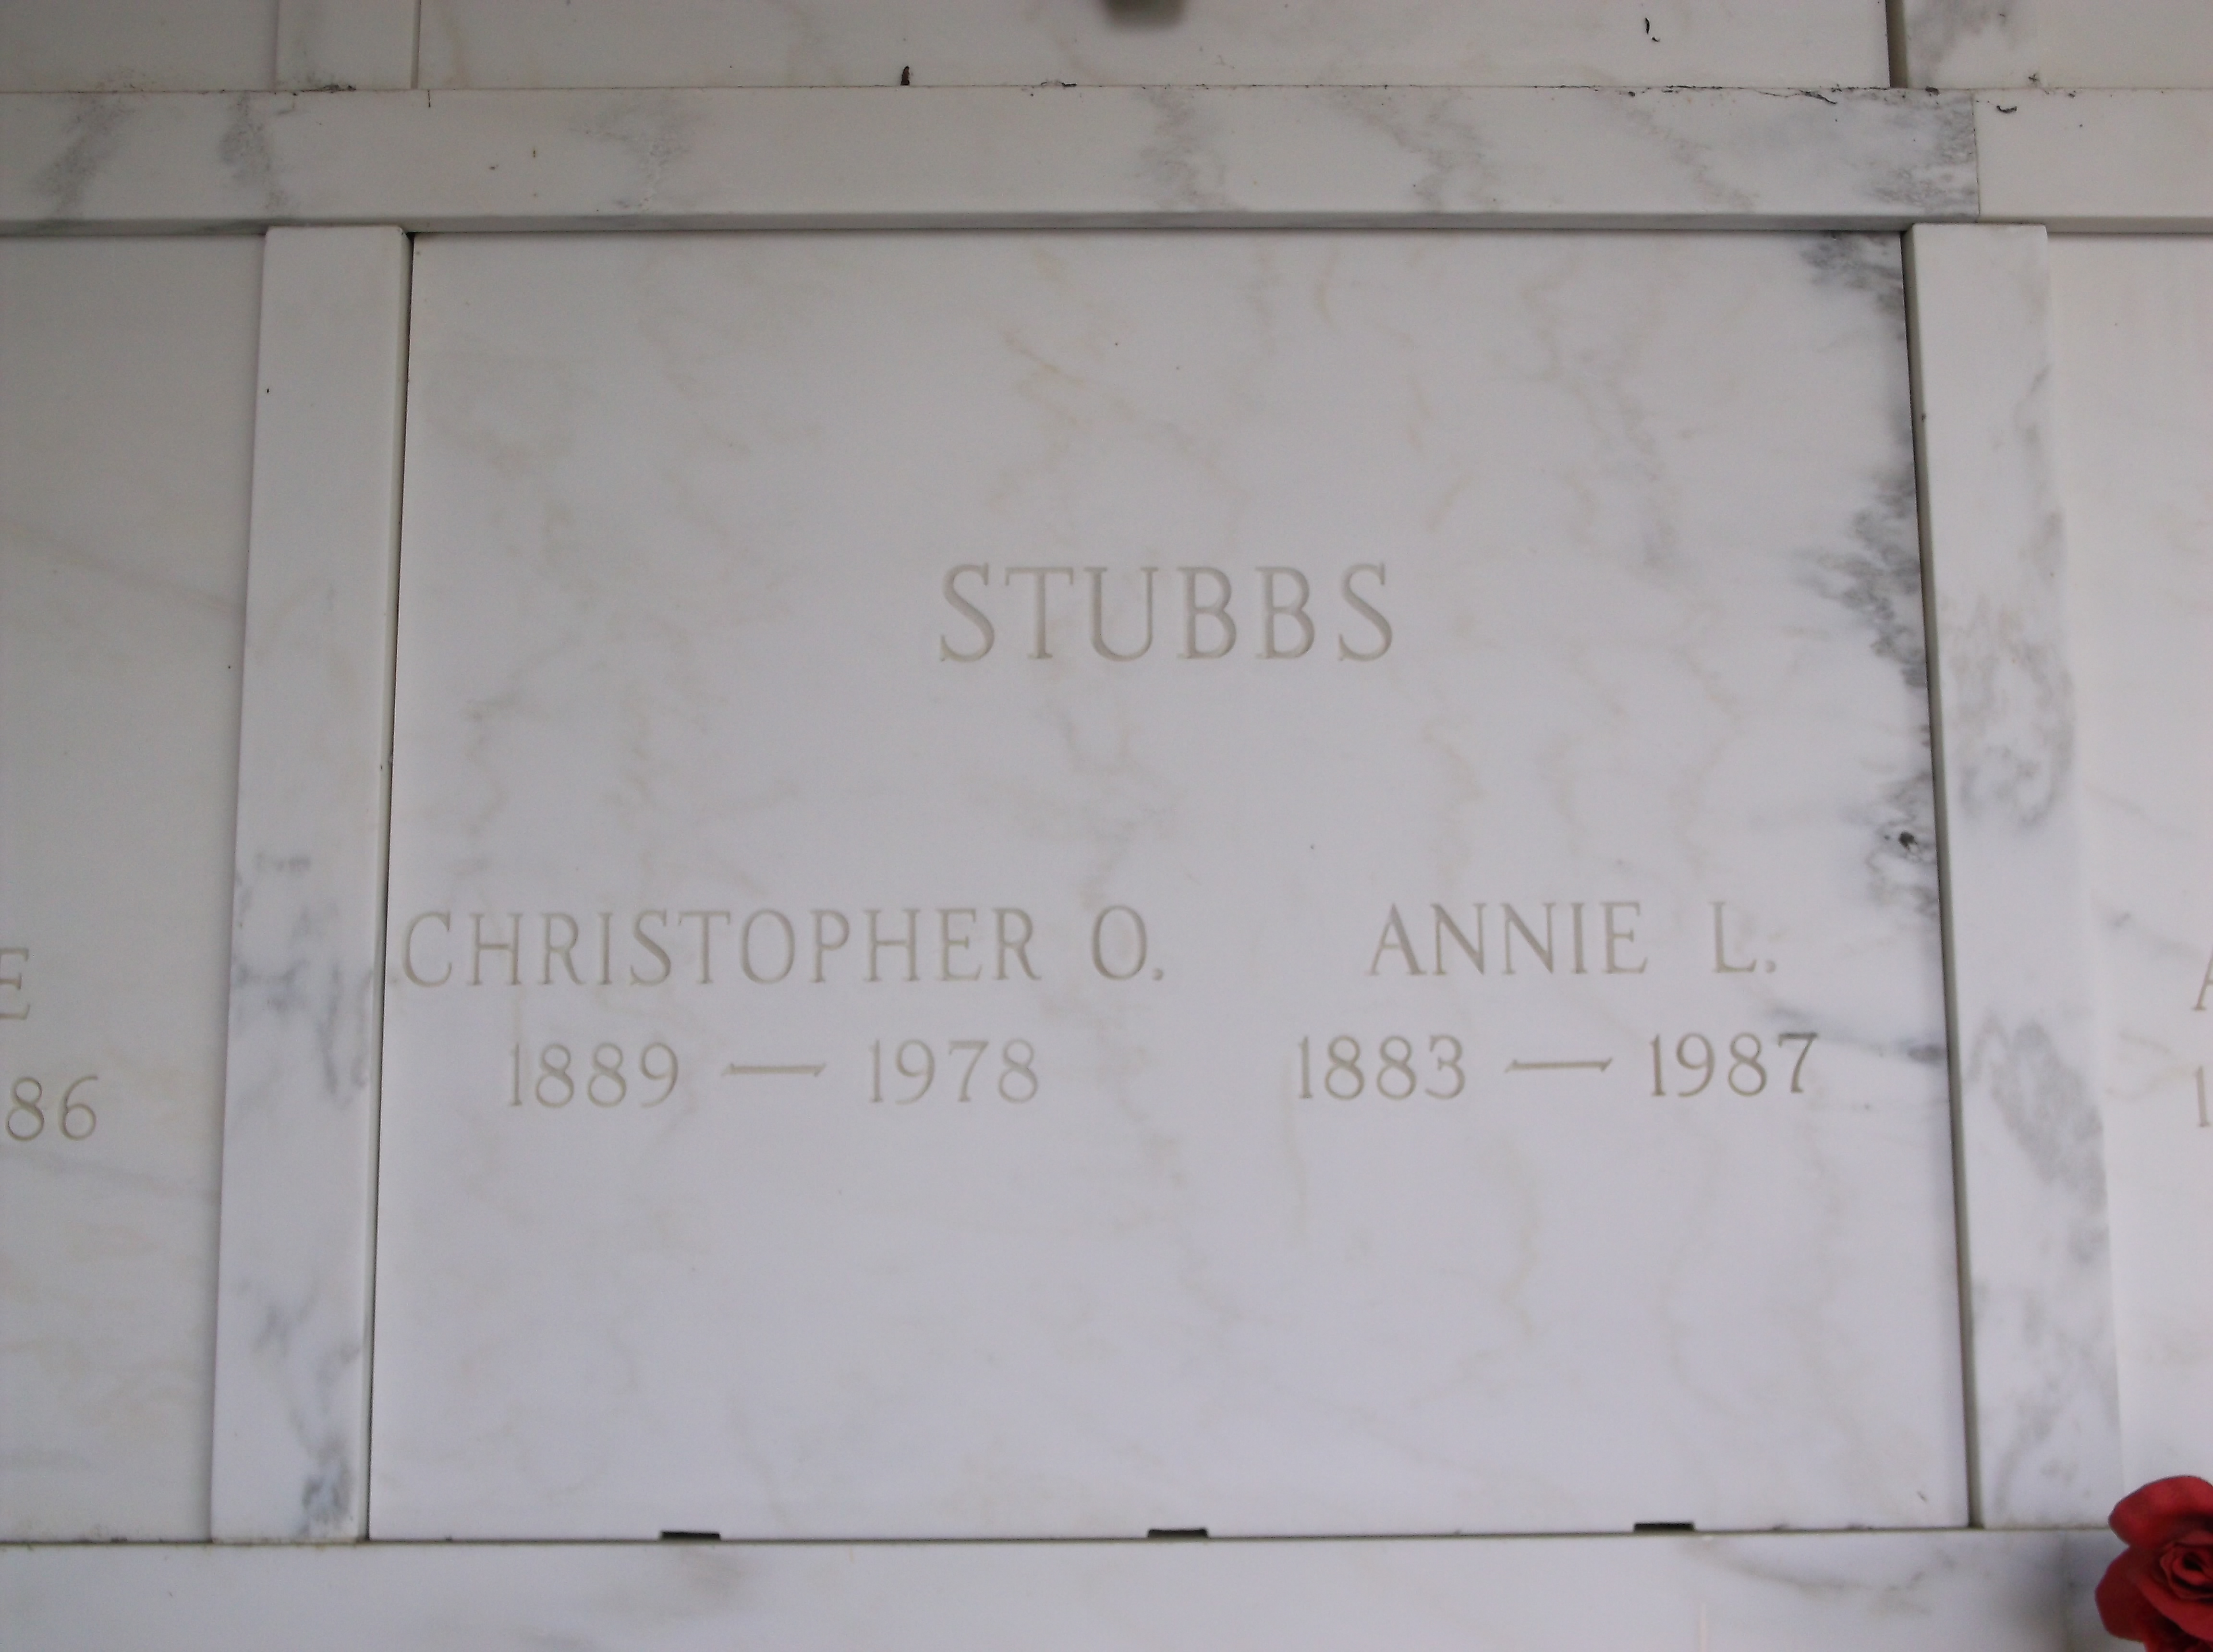 Christopher O Stubbs